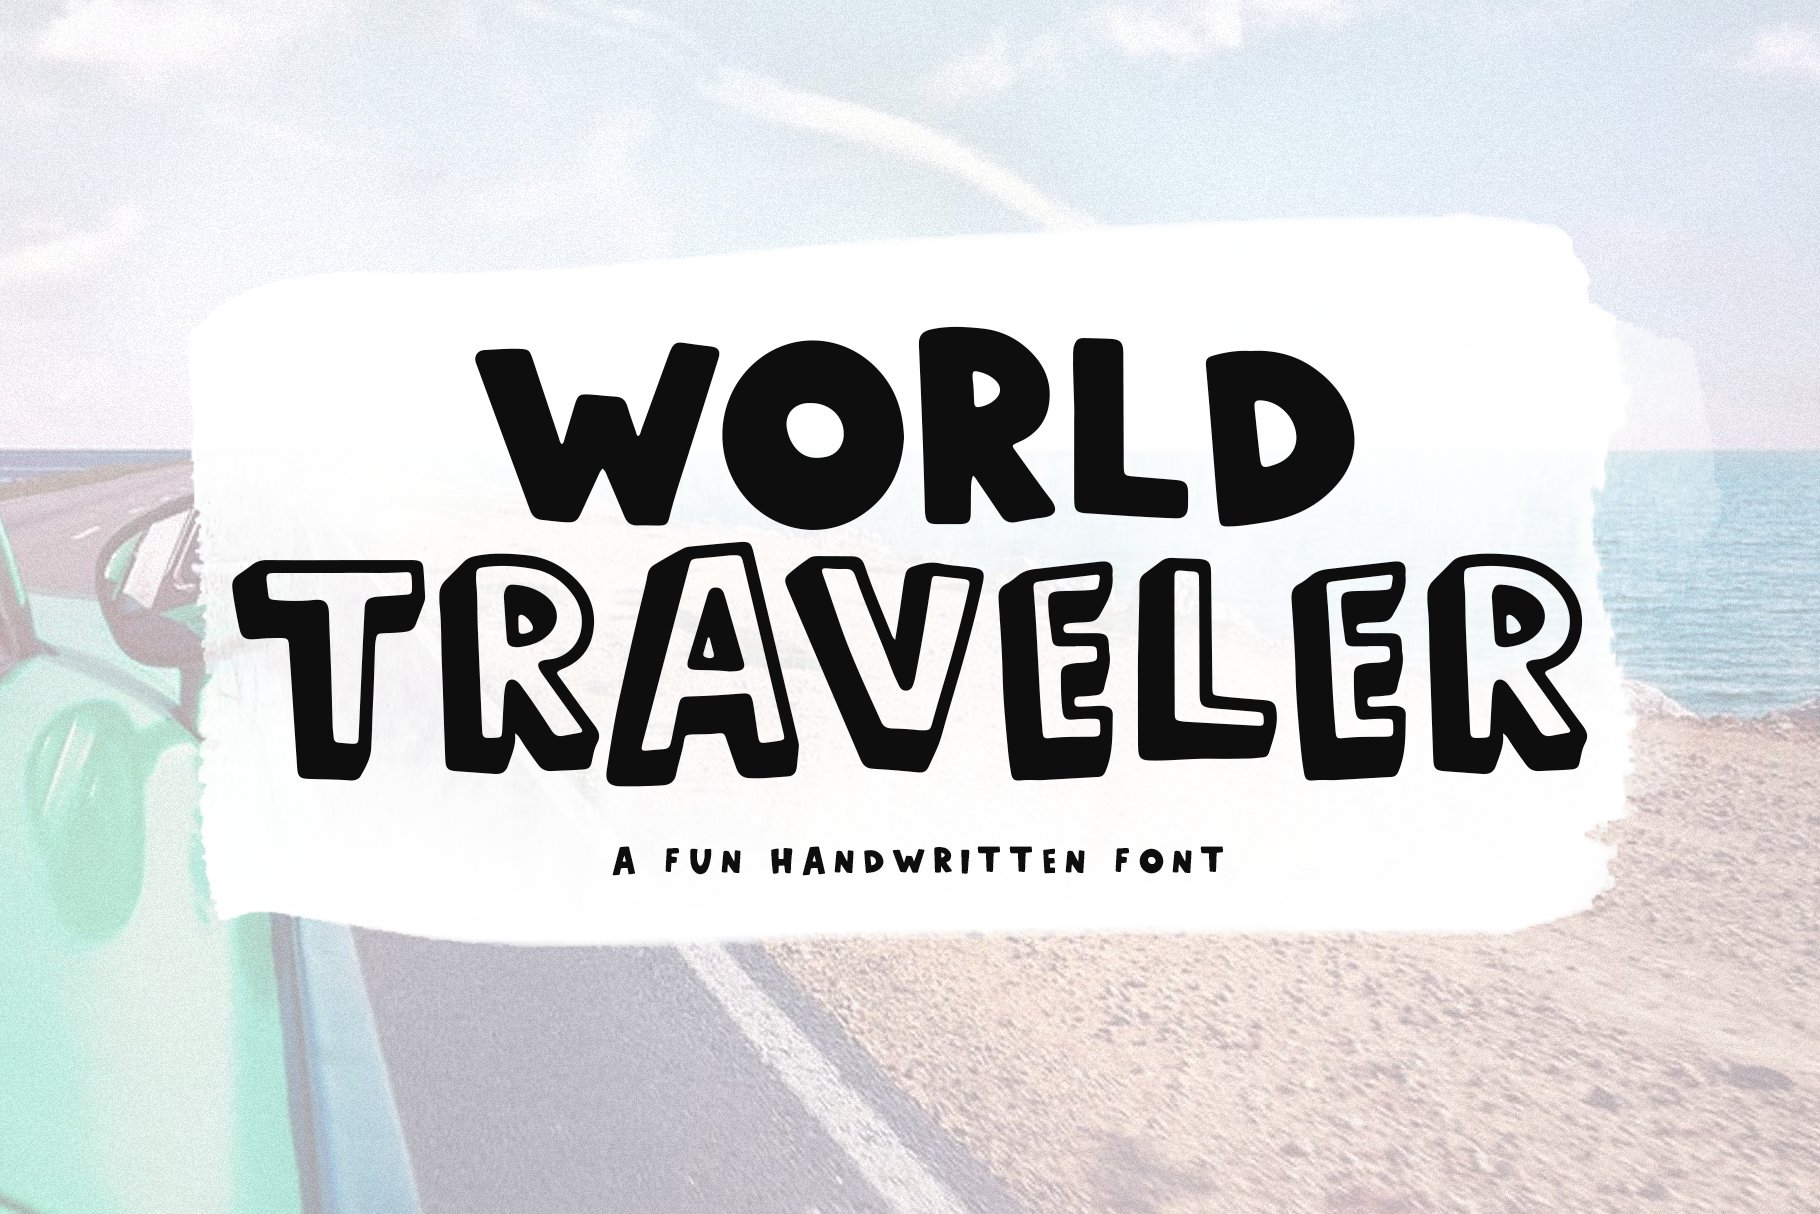 World Traveler | Handwritten Font cover image.